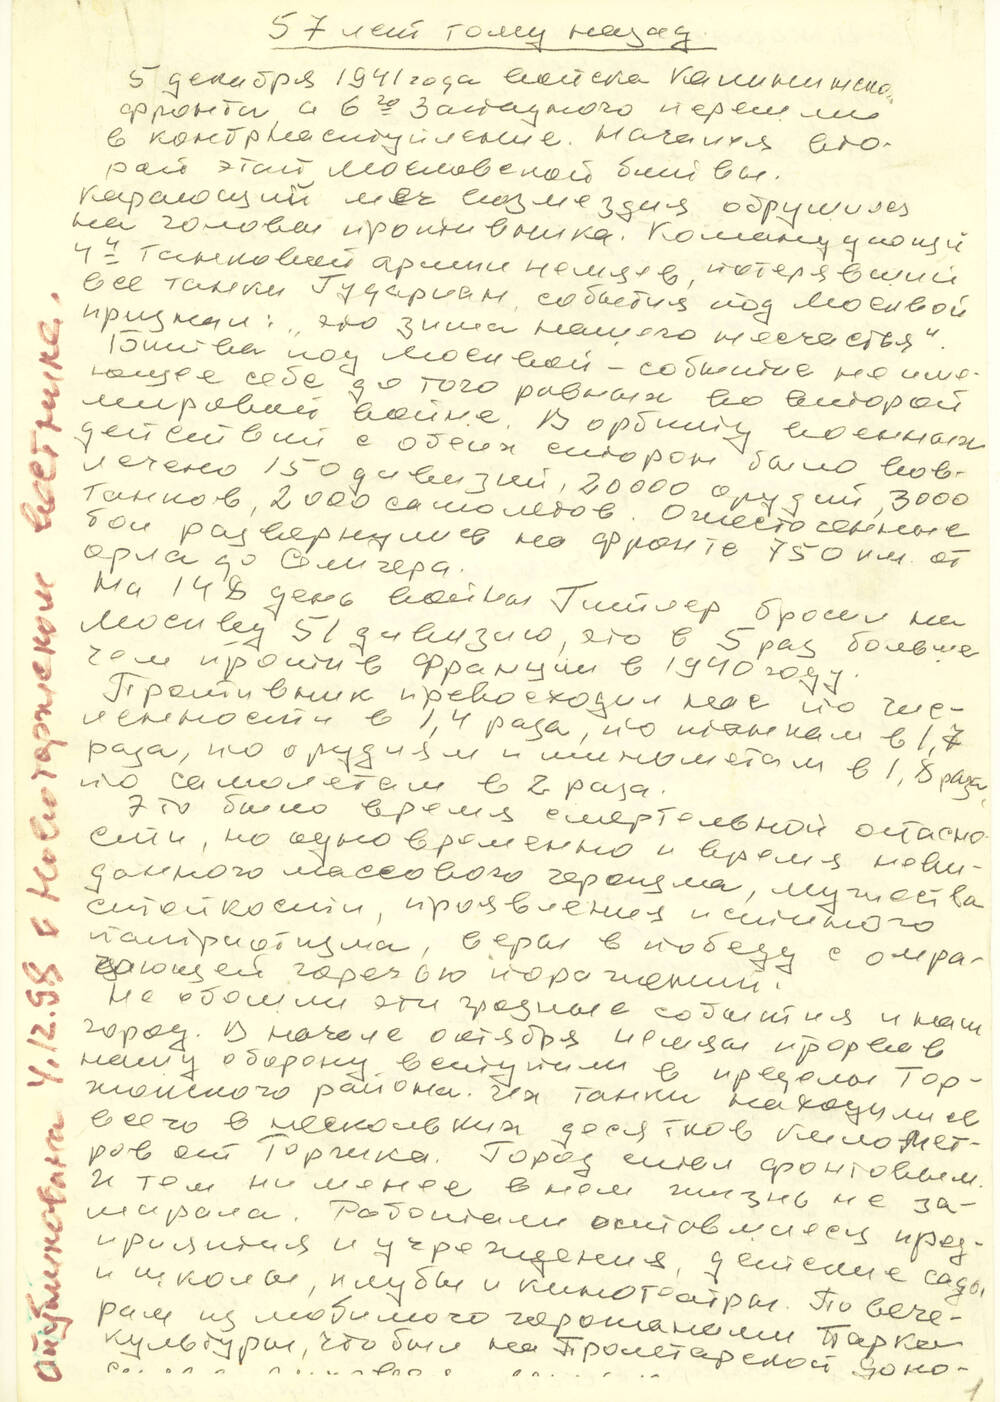 Рукопись С.Г. Букарева 57 лет тому назад, опубликованная 4.12.1998 в газете Новоторжский вестник